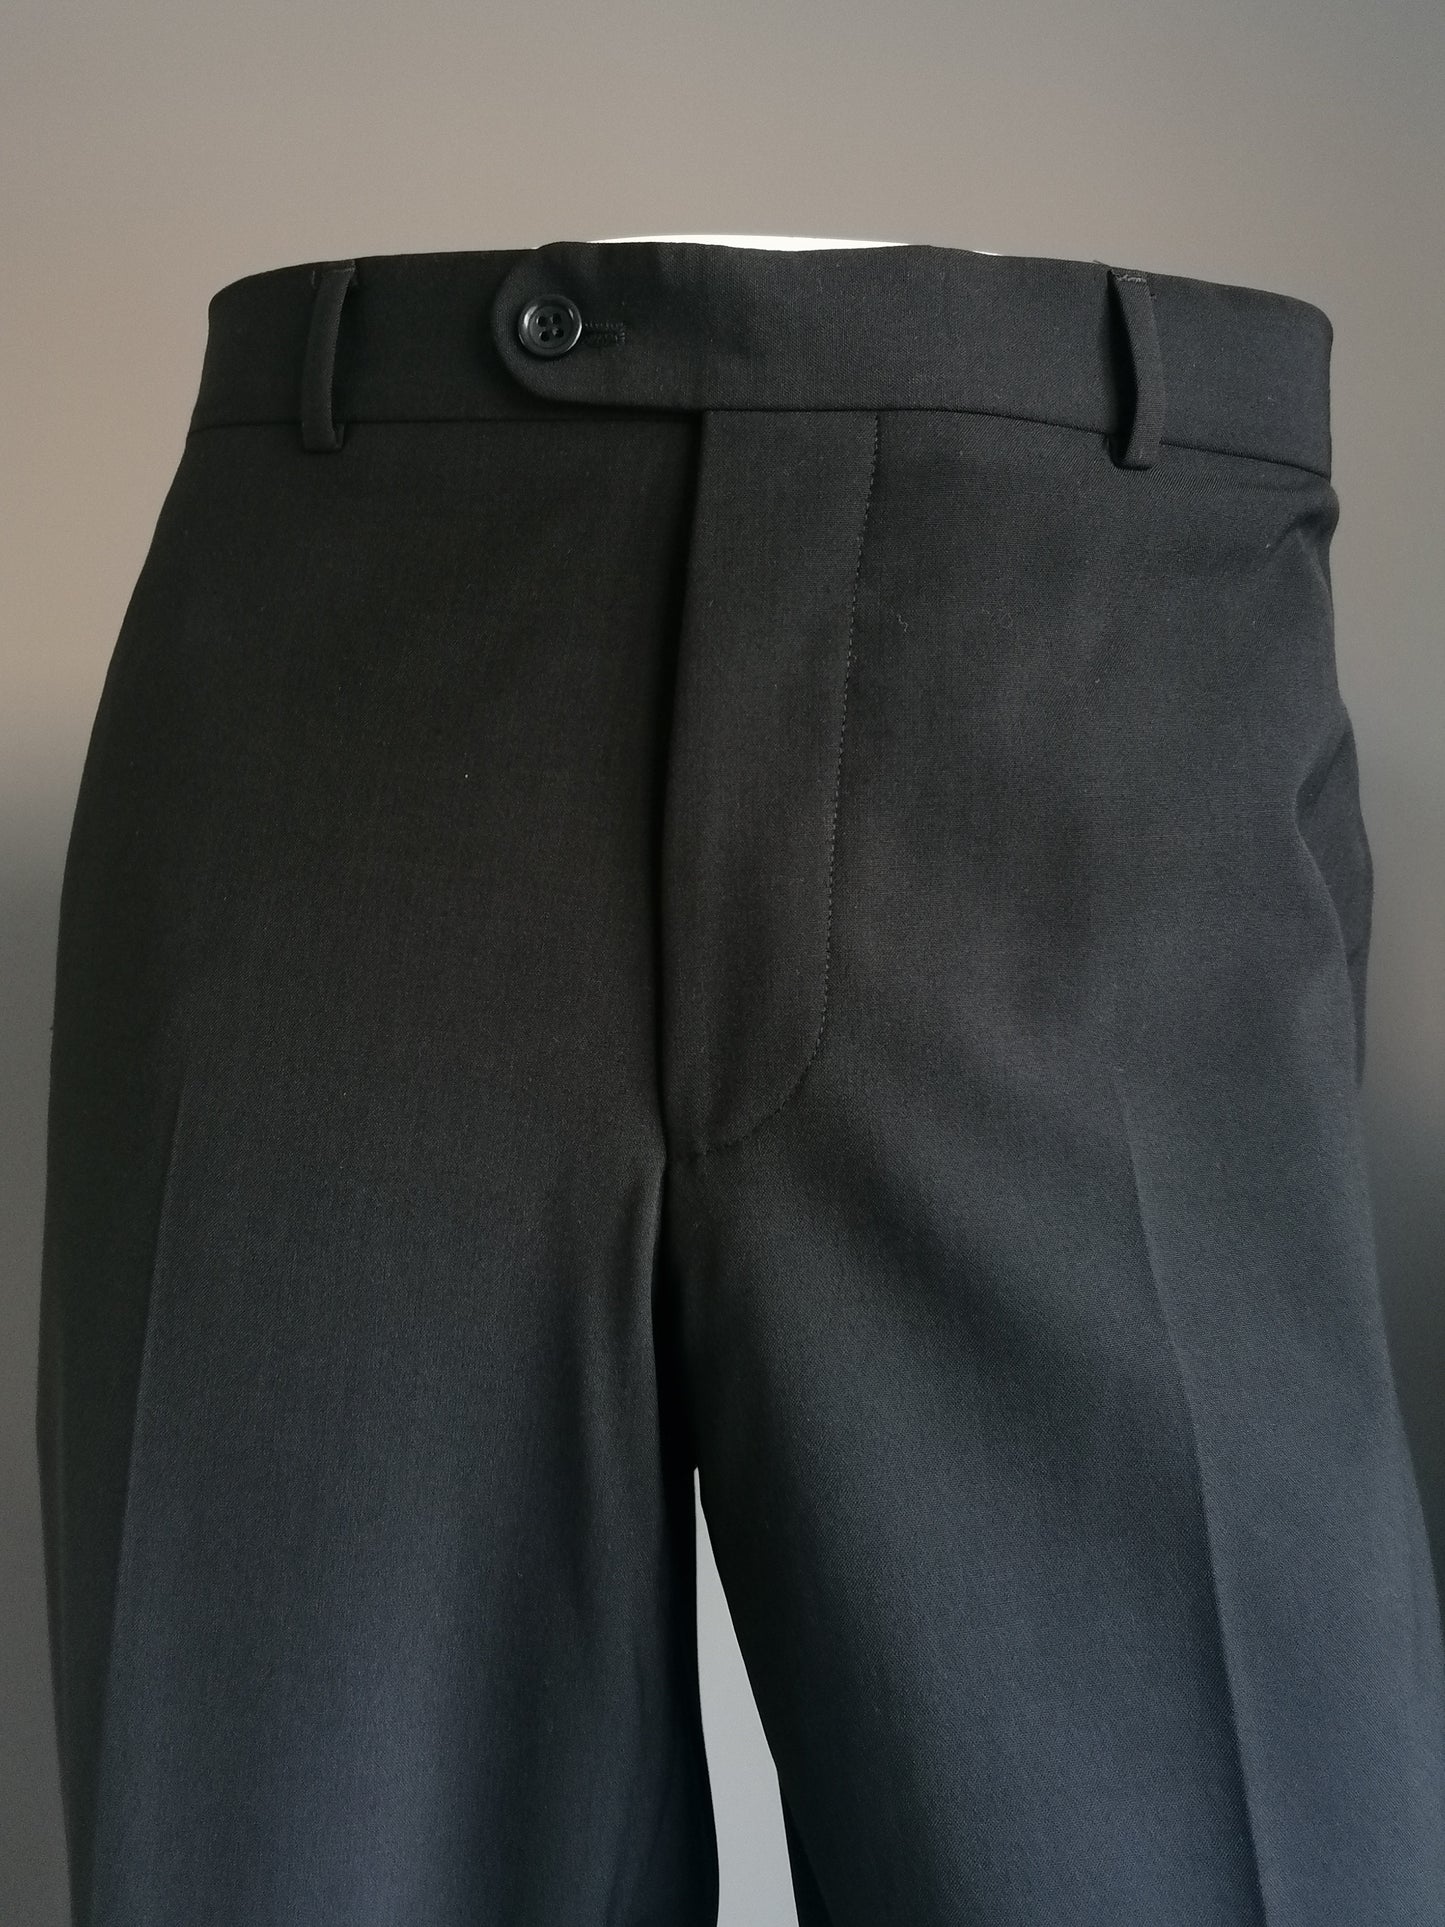 Costume de laine Van Gils. Couleur noire. Taille combi: Taille de la veste 50 / m & pantalons MT 54 / L